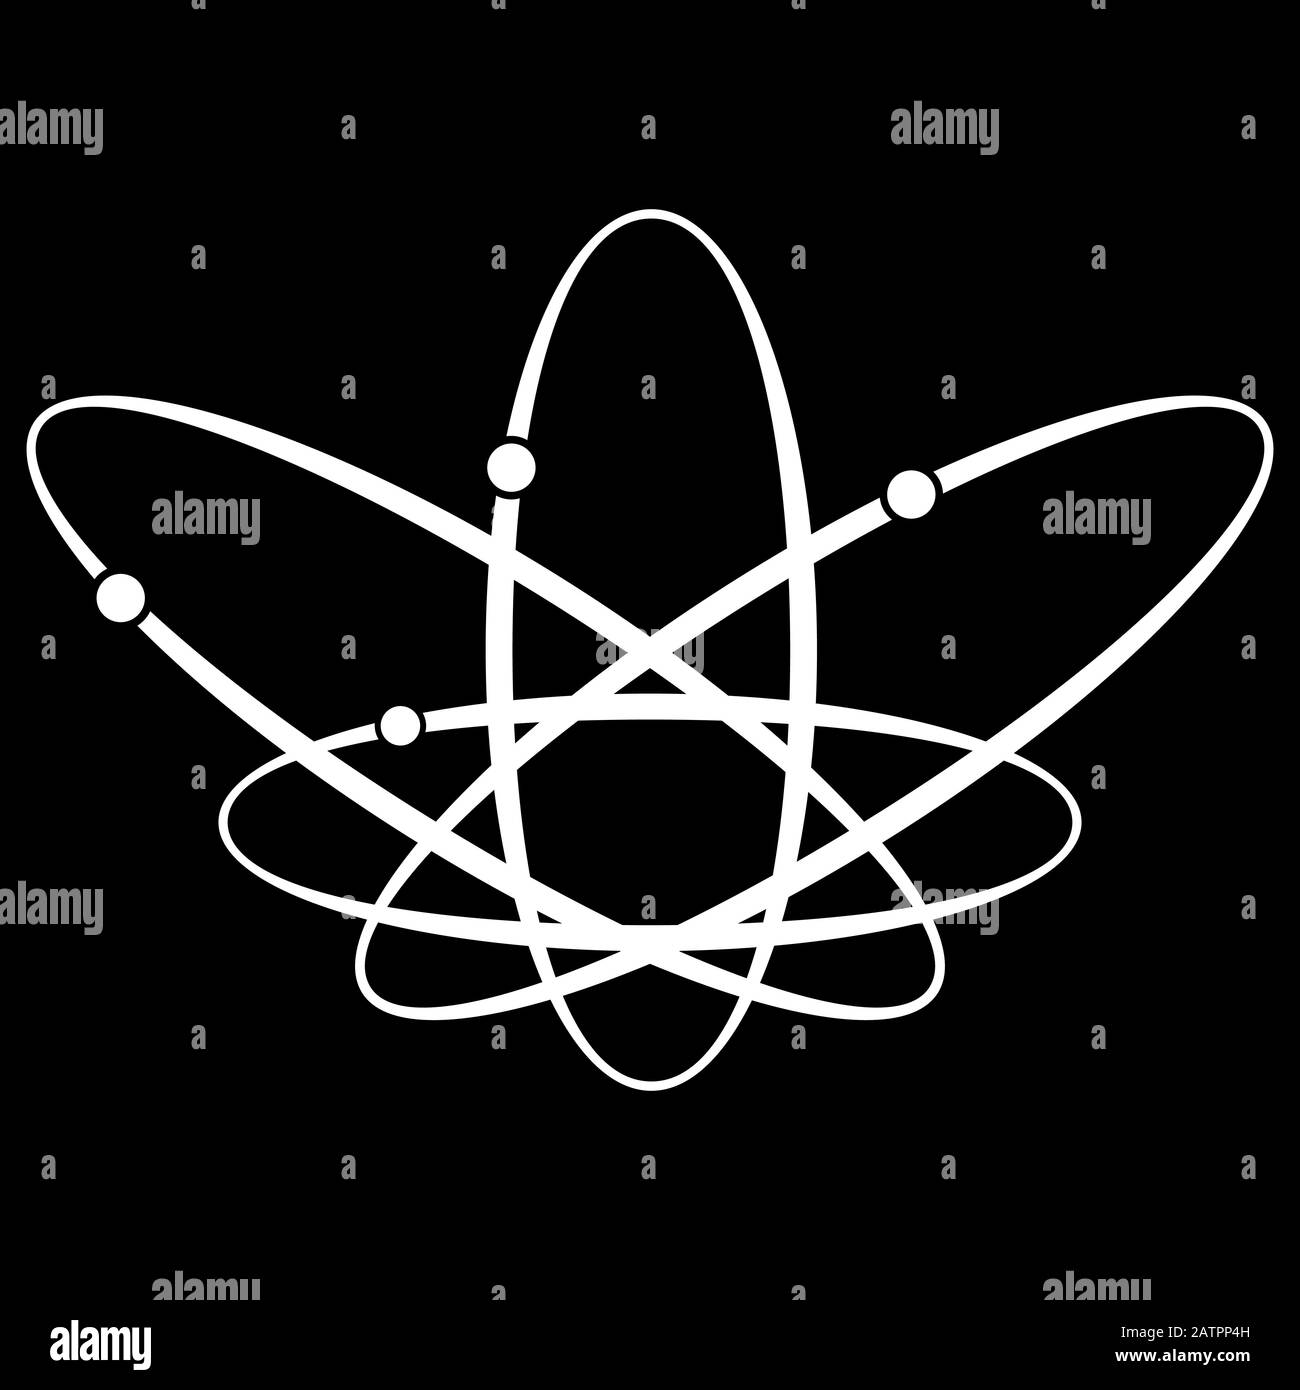 Átomo con electrones. Representación esquemática del átomo, diseño científico Ilustración del Vector